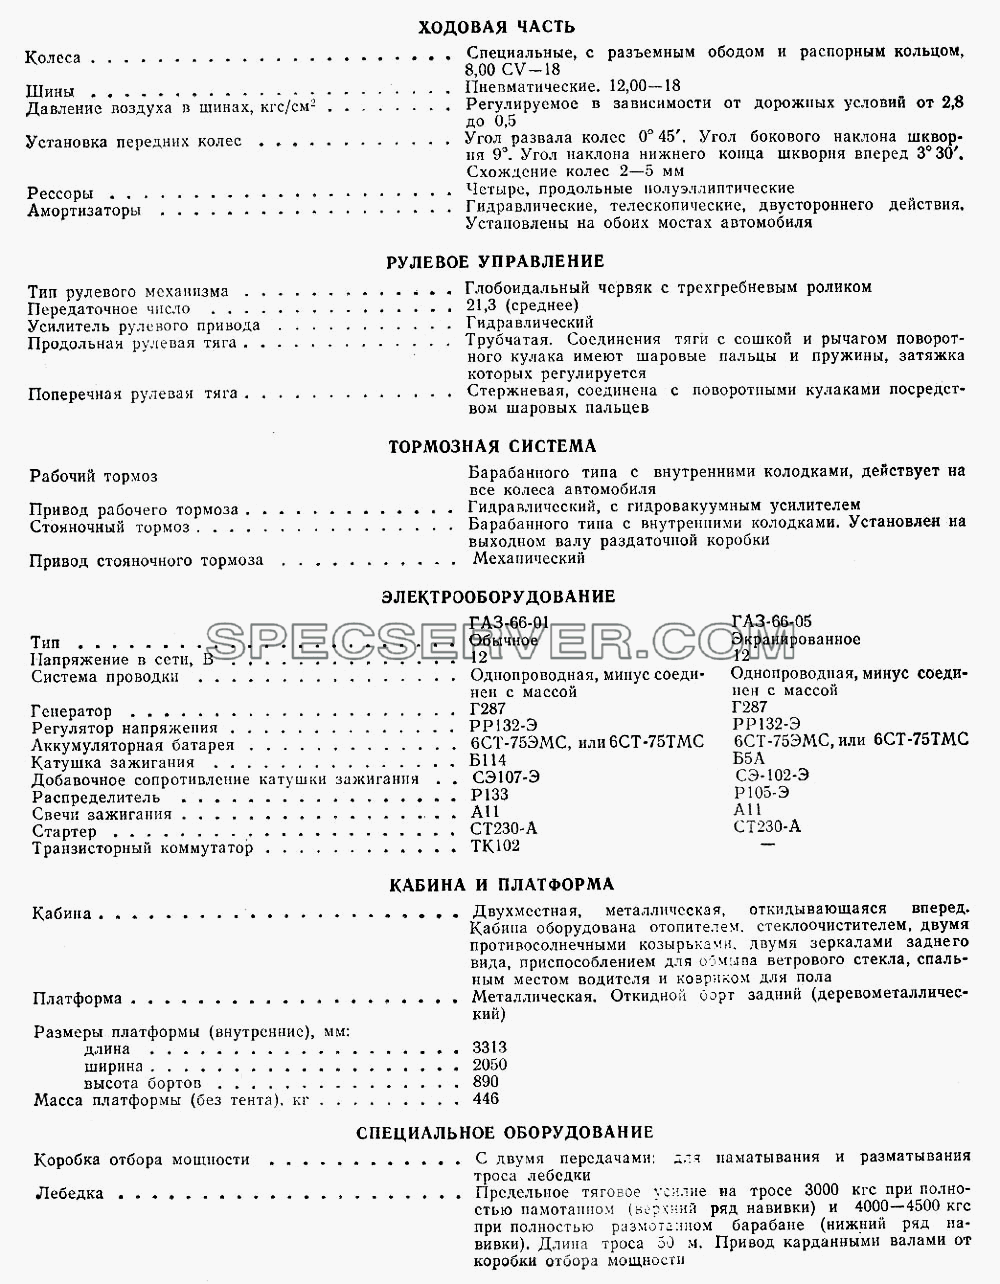 Лист 3 для ГАЗ-66 (Каталога 1983 г.) (список запасных частей)